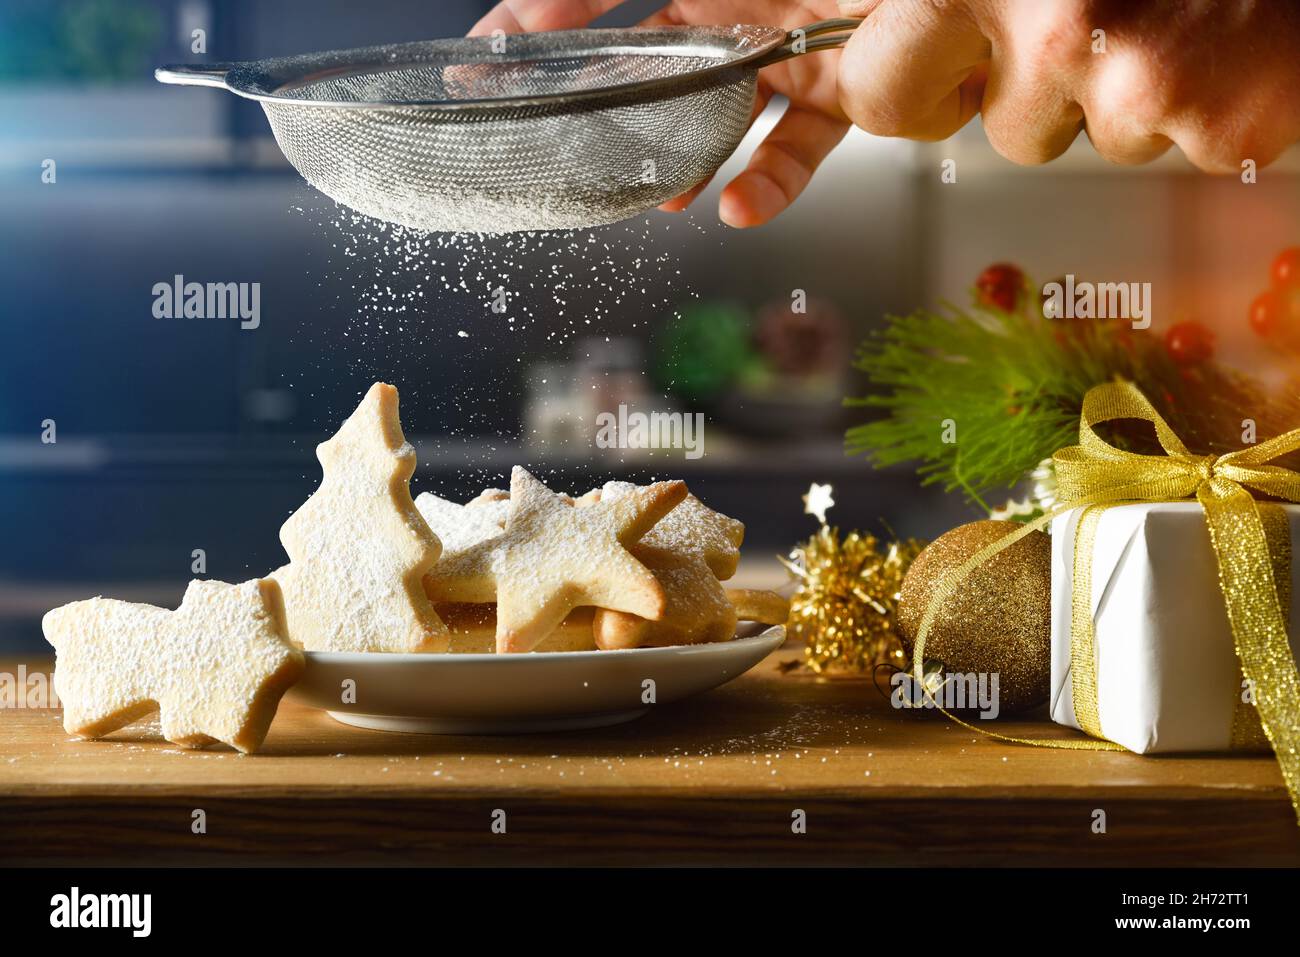 Parsemer de biscuits de Noël faits maison sur une assiette sur le banc de cuisine avec du sucre glace et un tamis de cuisine.Vue avant.Composition horizontale. Banque D'Images